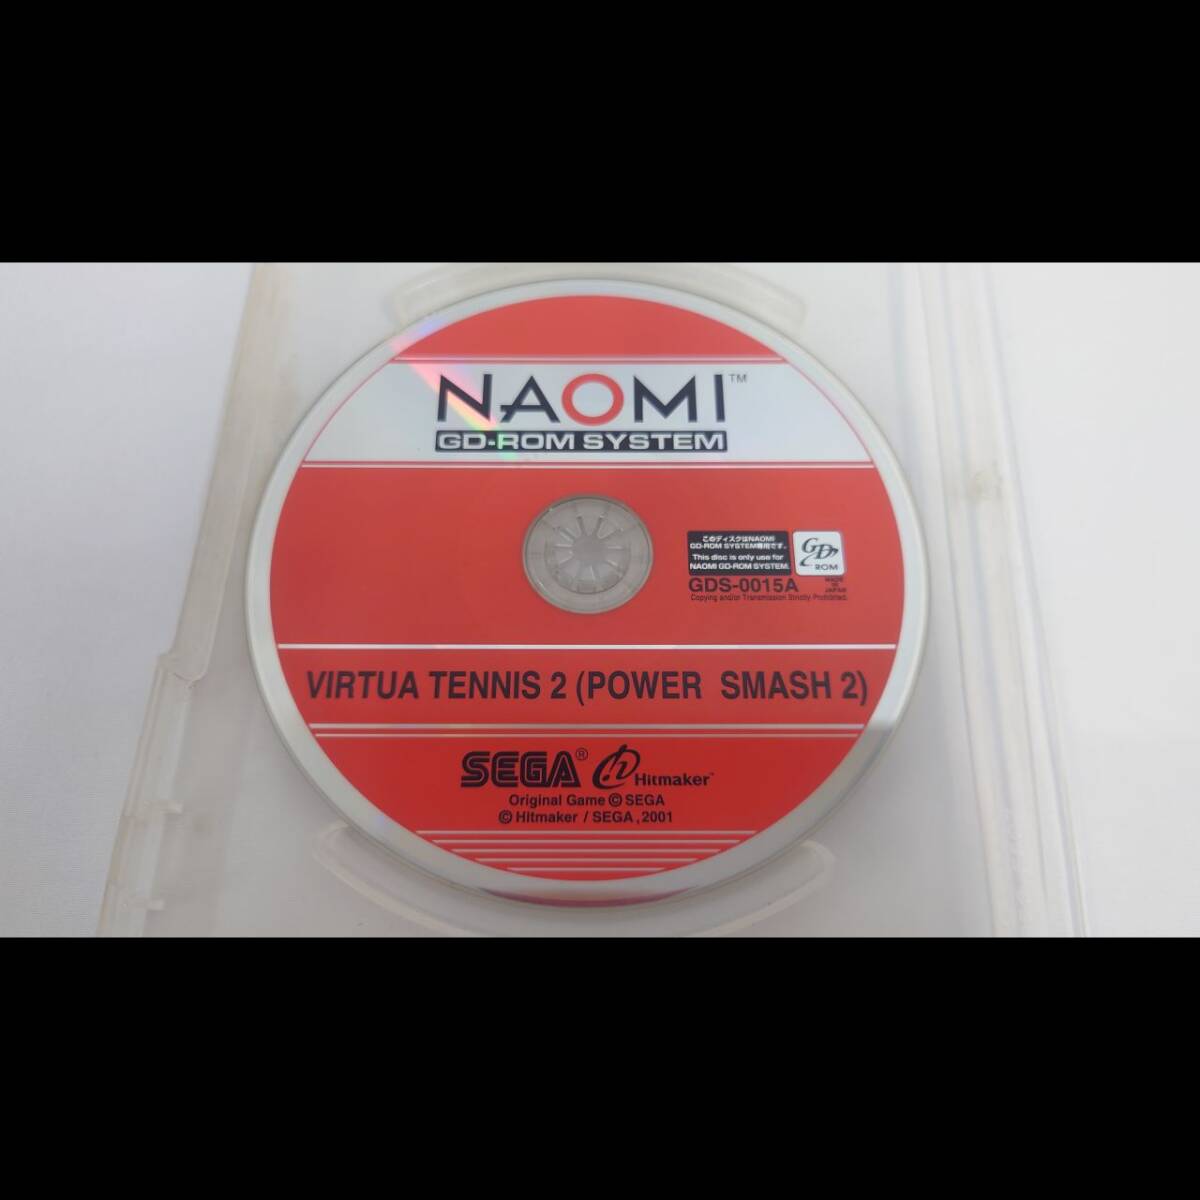  Sega Power Smash 2 NAOMI GD-ROM soft рабочее состояние подтверждено аркада основа доска 